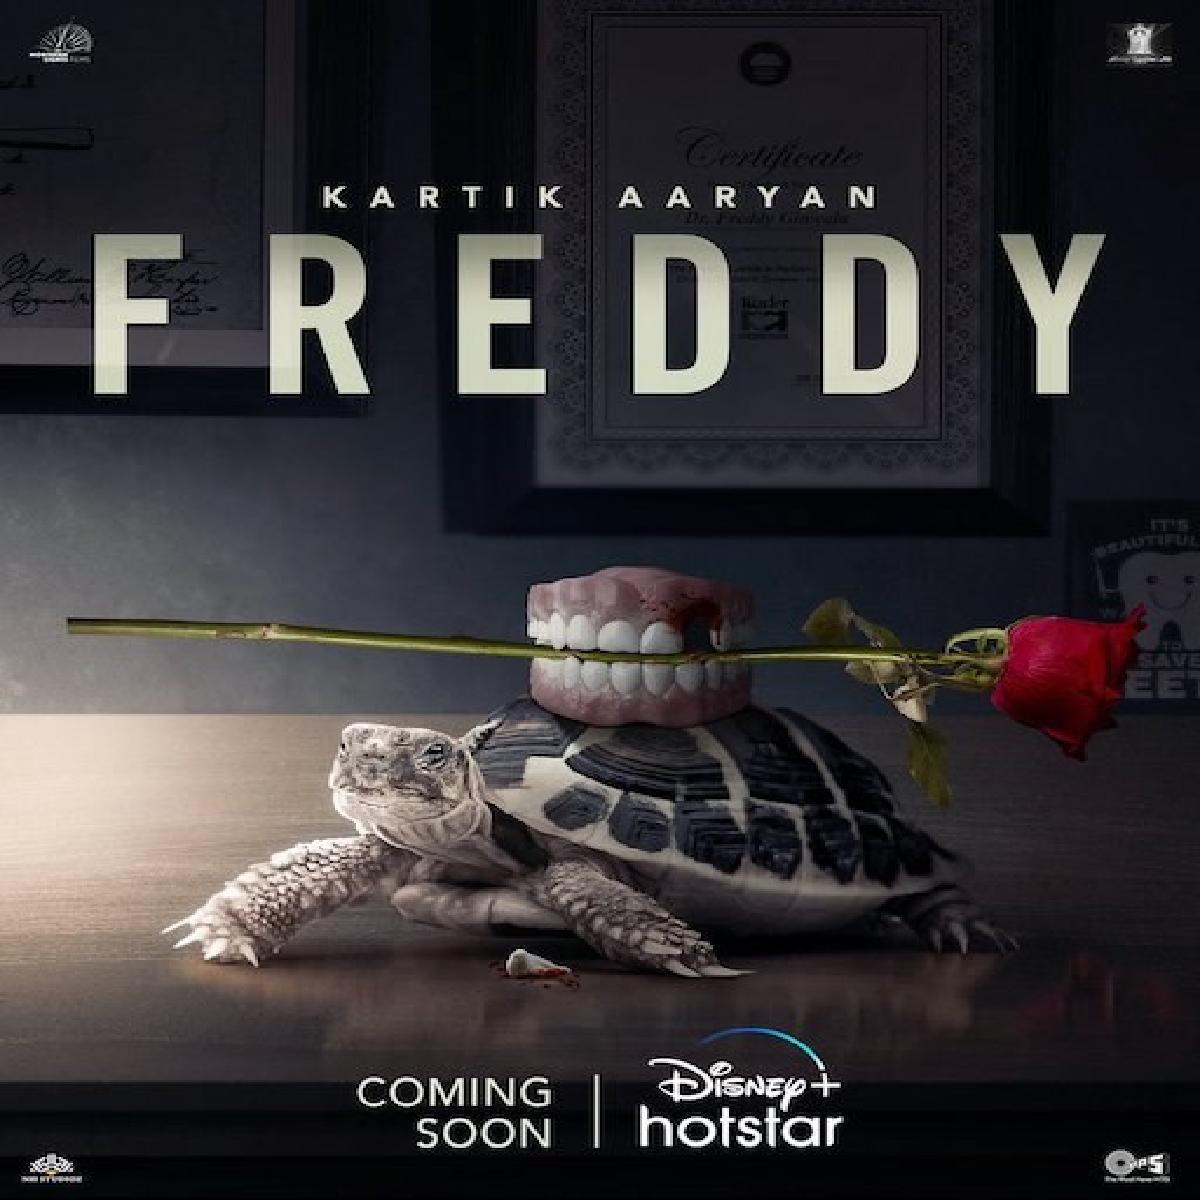 Freddy Poster Out, Starring Kartik Aaryan